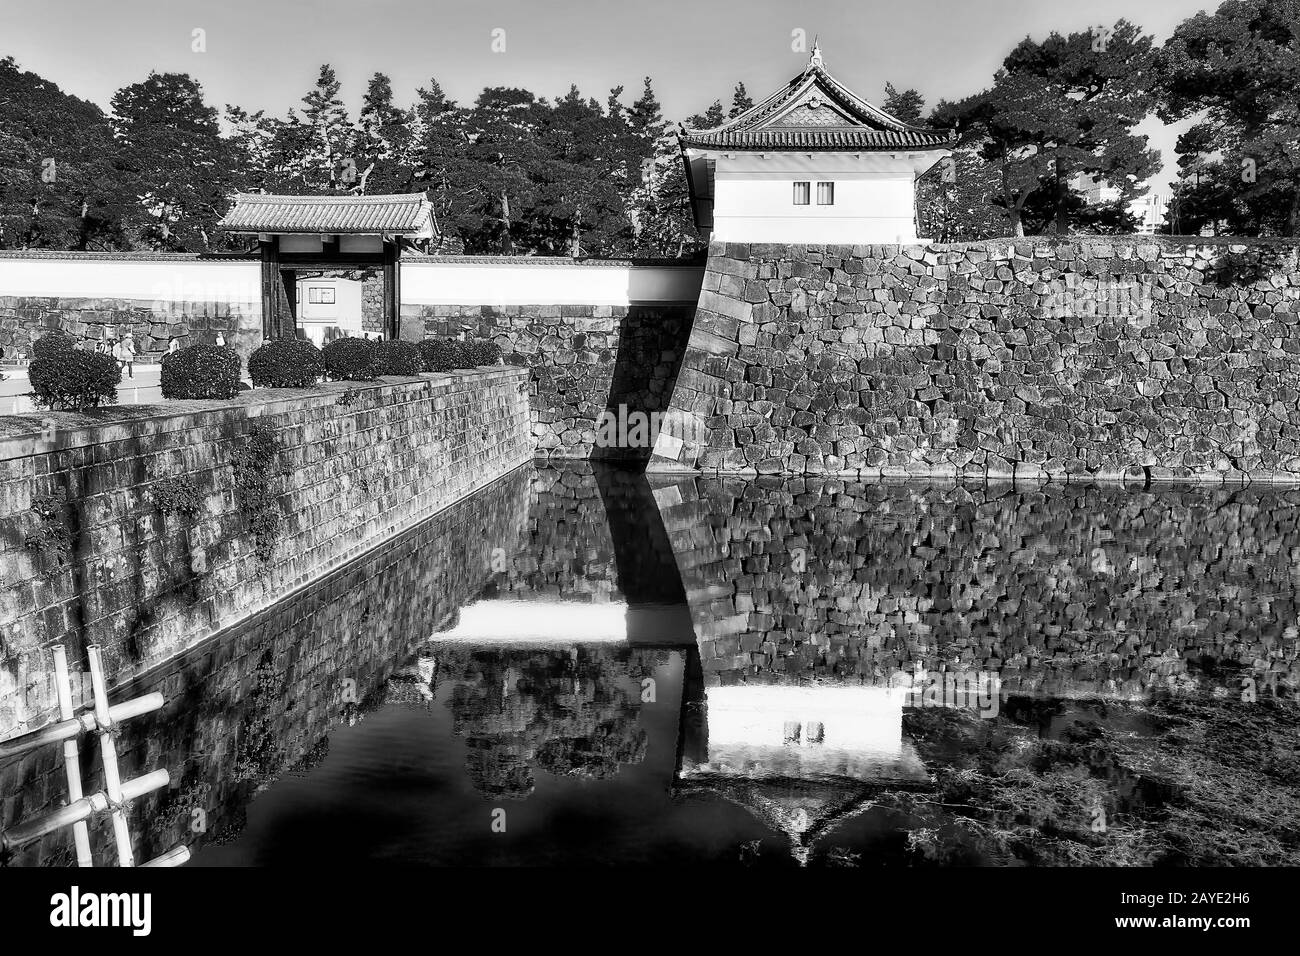 Immagine bianca nera ad alto contrasto di forti pareti in pietra e ampio fossato d'acqua intorno al castello imperiale di edo e al parco nella città giapponese di Tokyo. Foto Stock